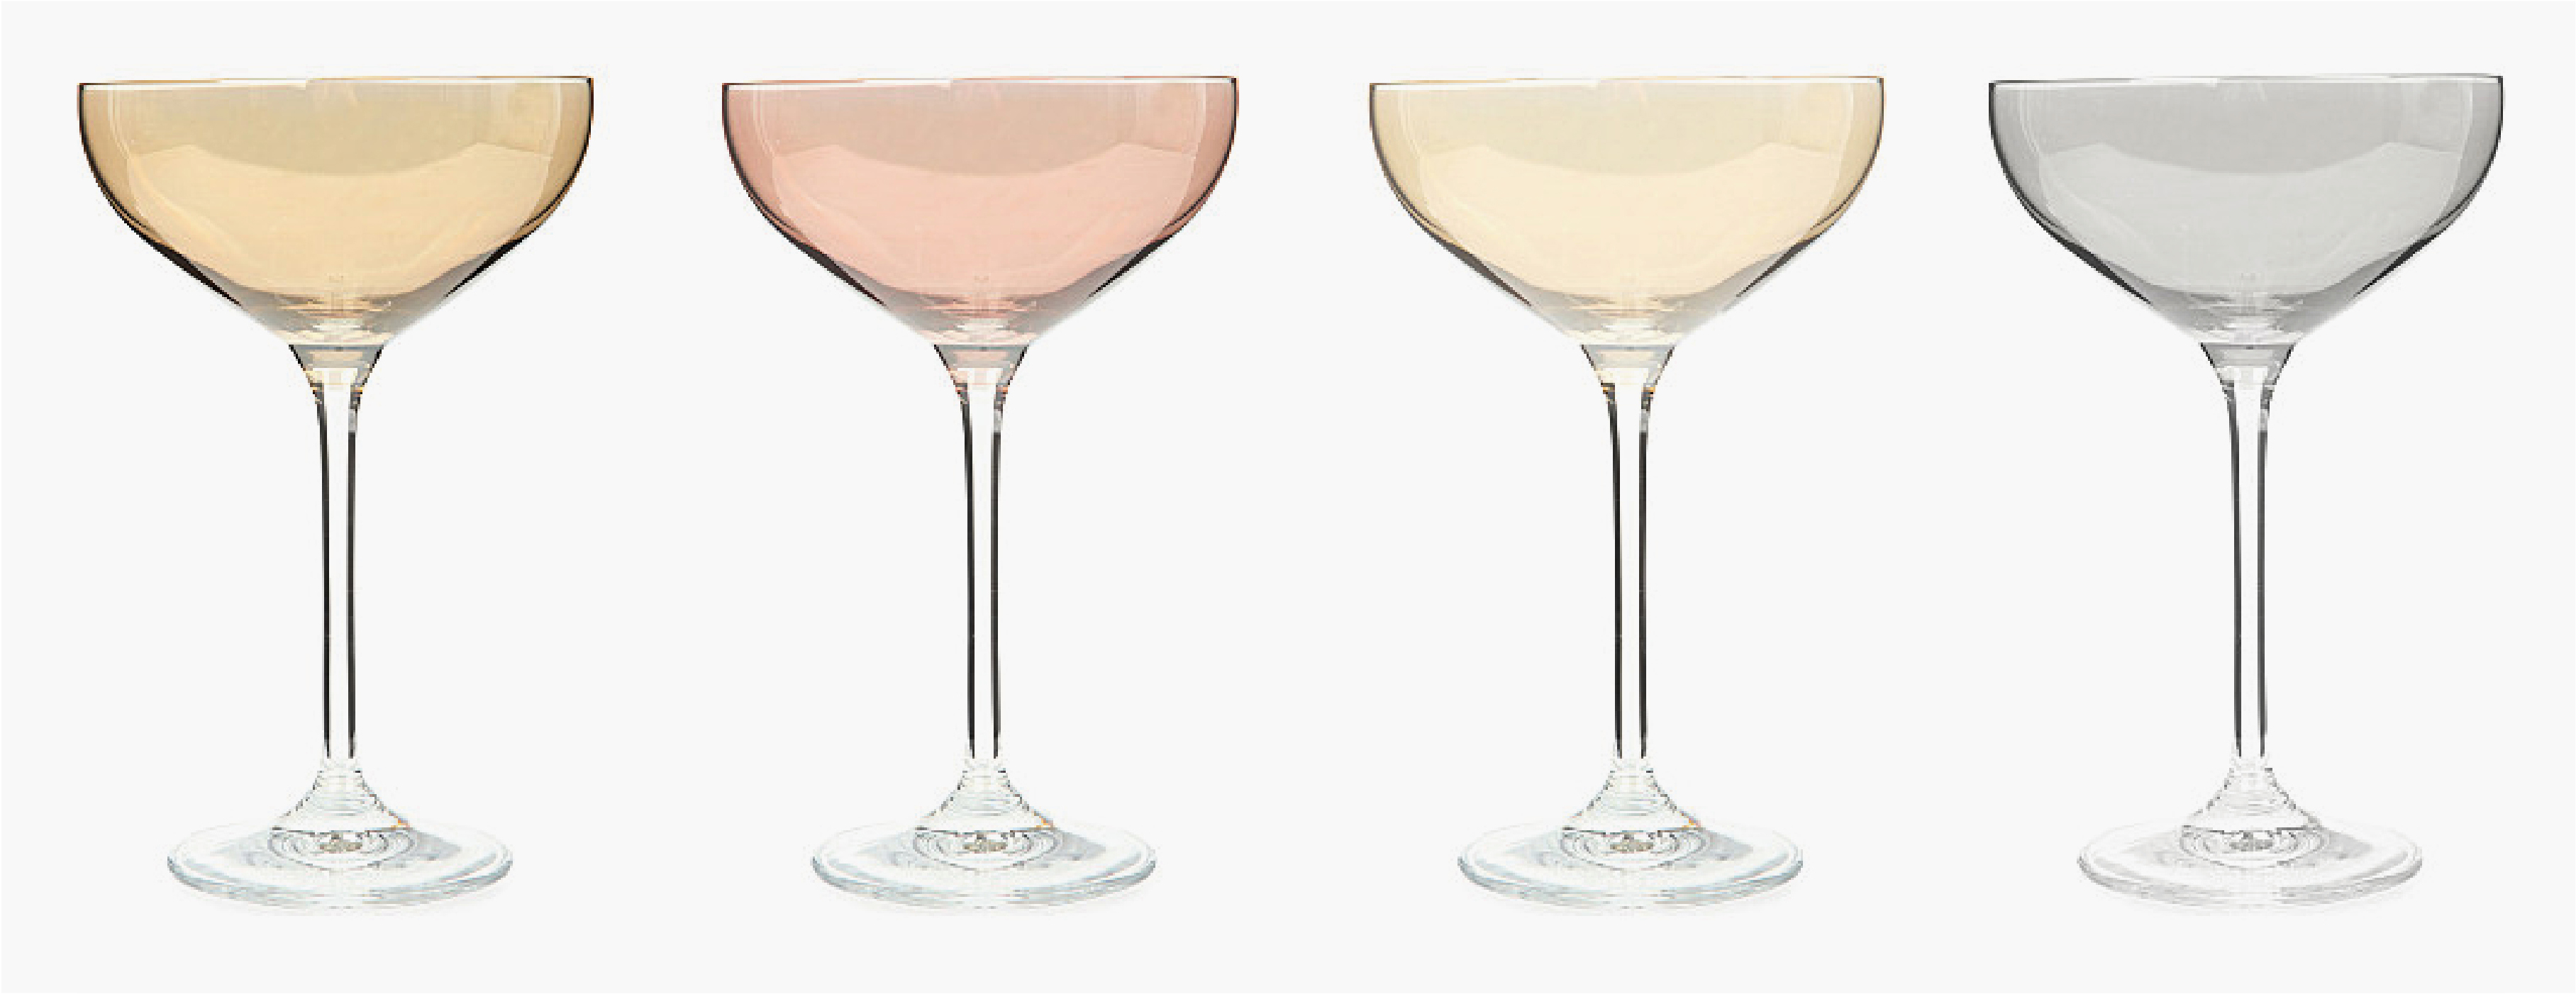 lsa-cocktail-glasses.jpg